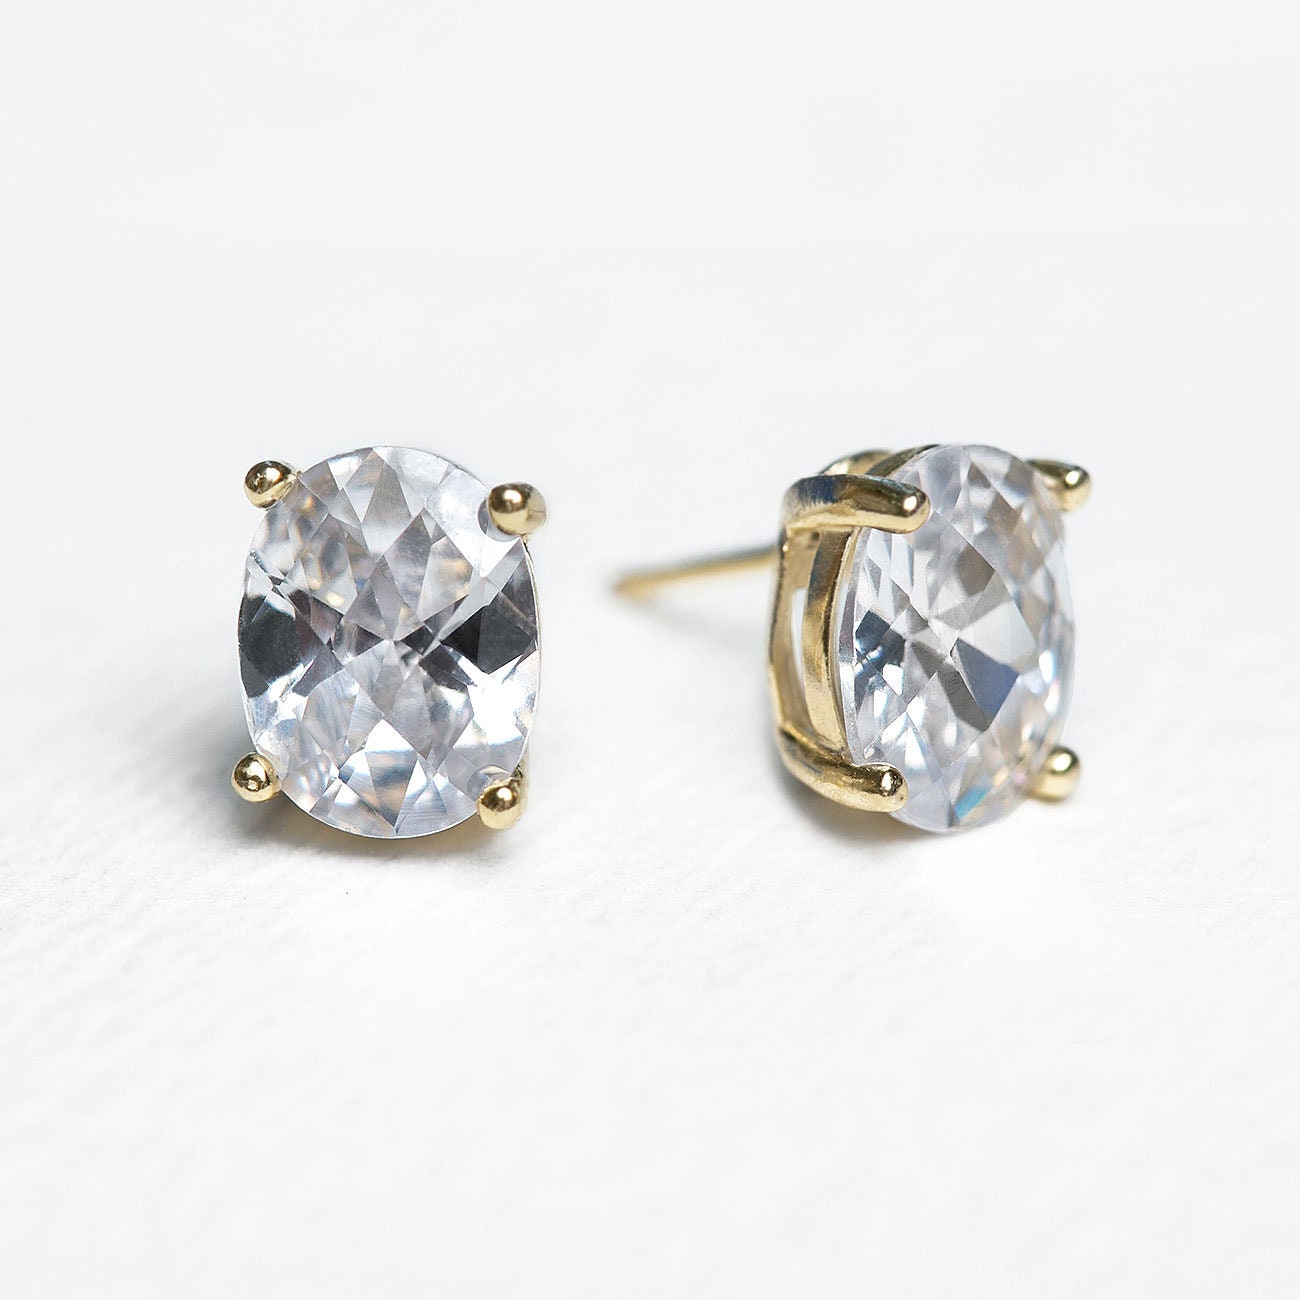 Bridal Earrings Stud Earrings Wedding Jewelry Minimalist | Etsy